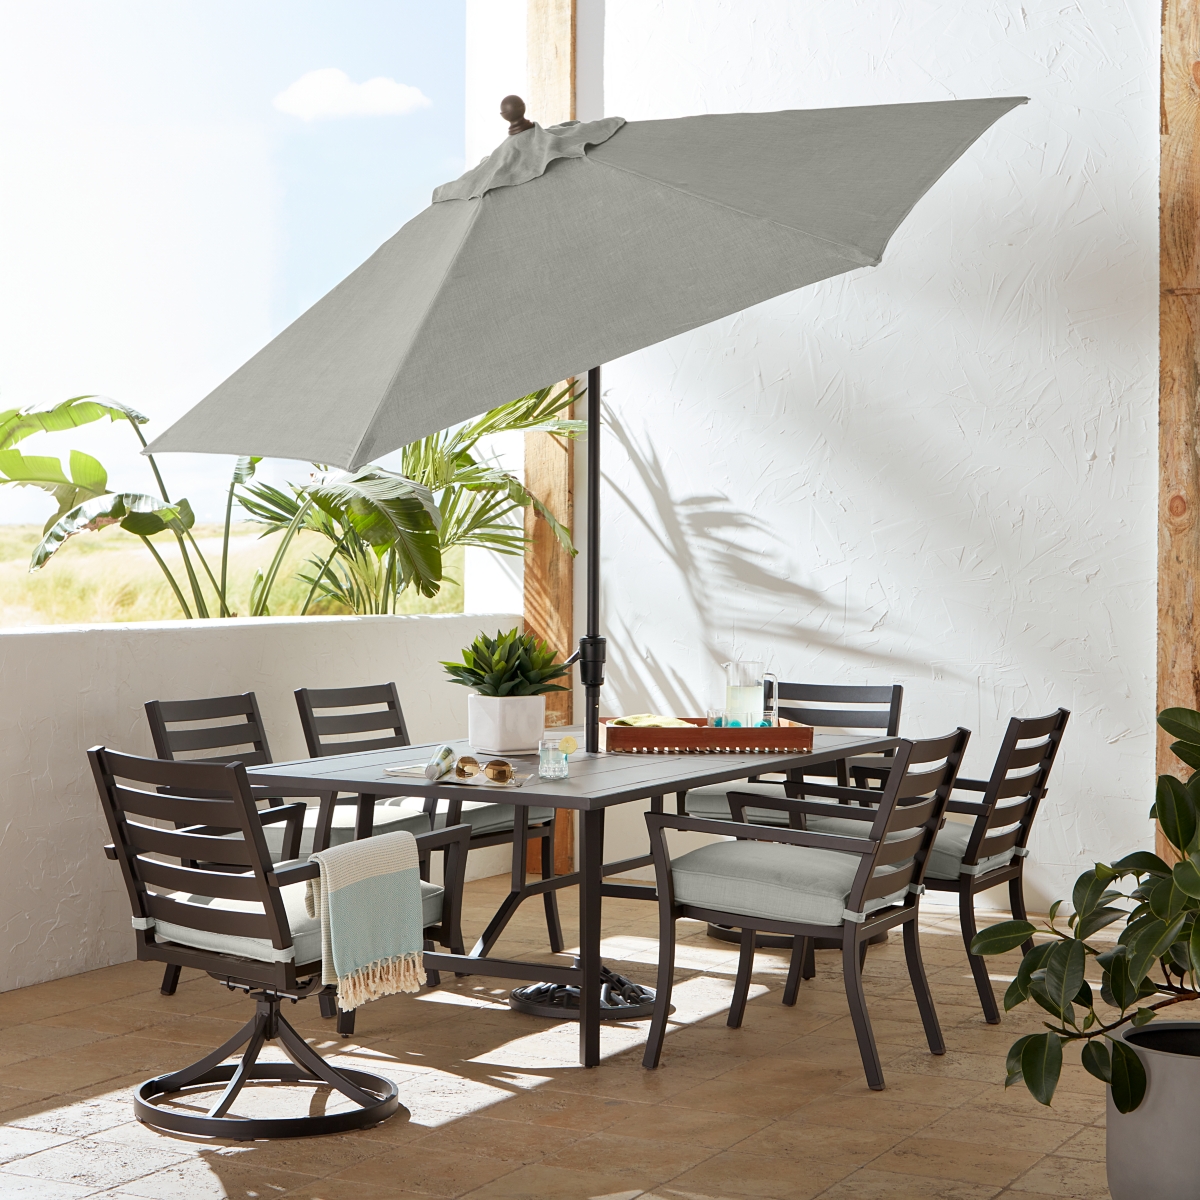 Shop Agio Astaire Outdoor 9' Umbrella + Umbrella Base In Oyster Light Grey